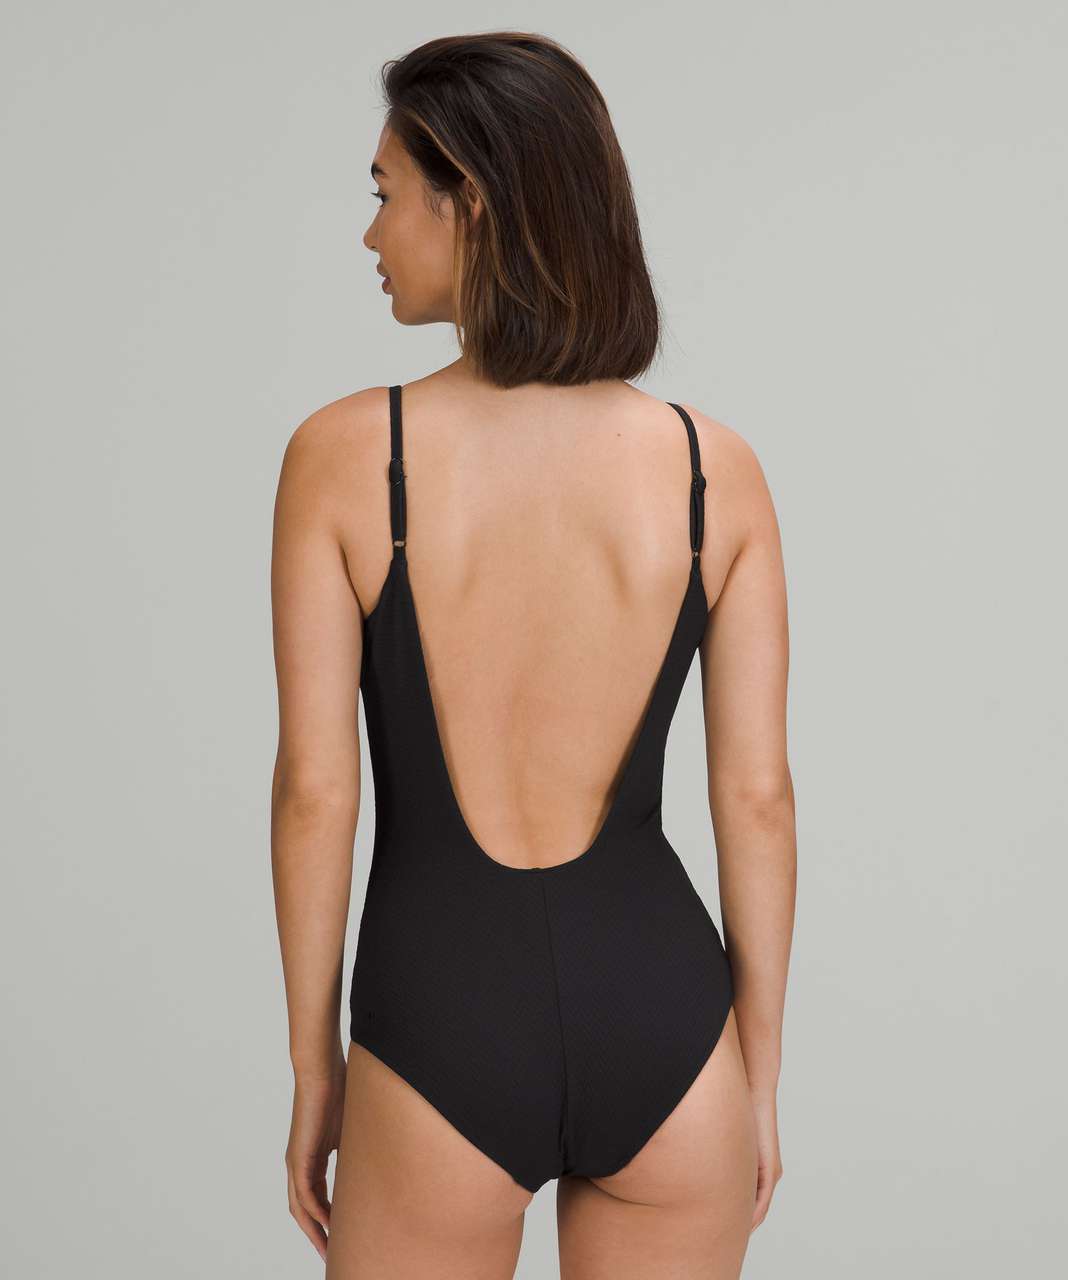 Lululemon Waterside Scoop One-Piece Swimsuit Model # LW2DKXS SIZE USA  10/UK14